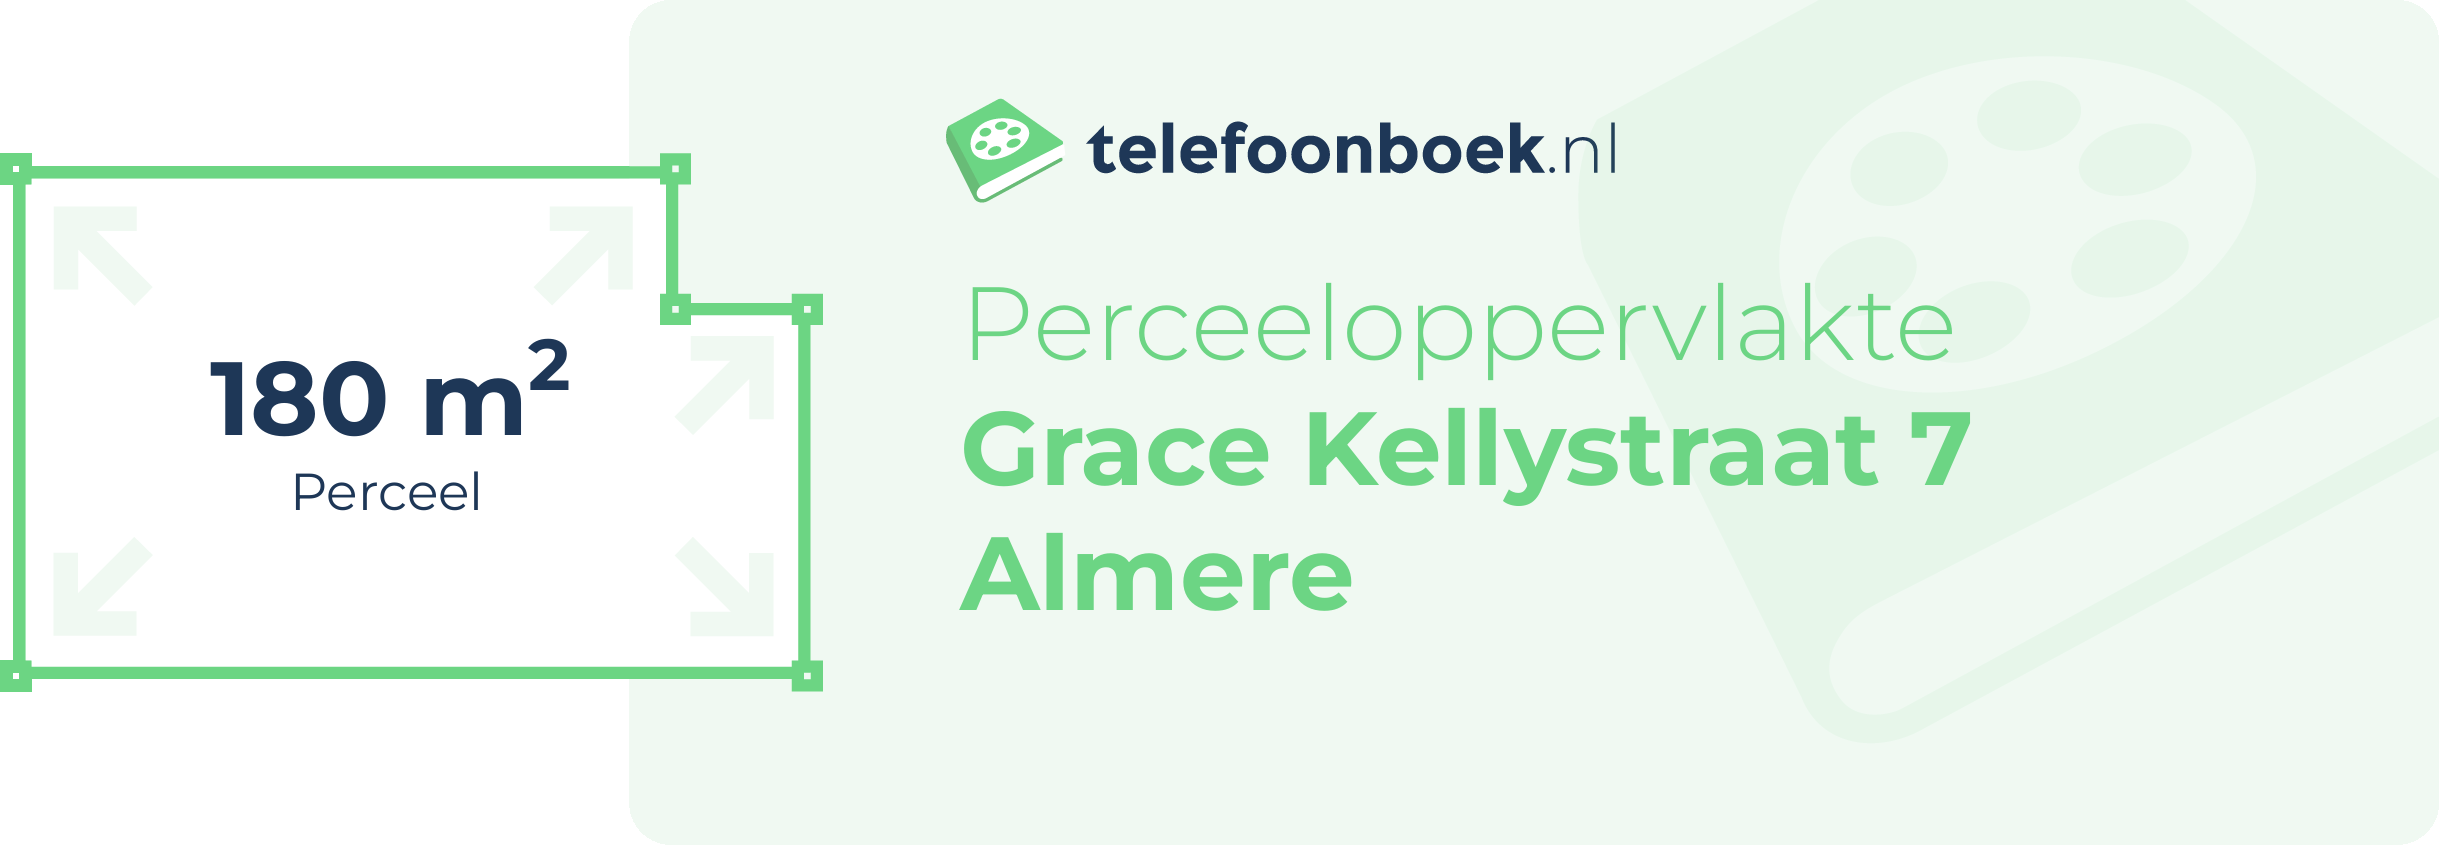 Perceeloppervlakte Grace Kellystraat 7 Almere